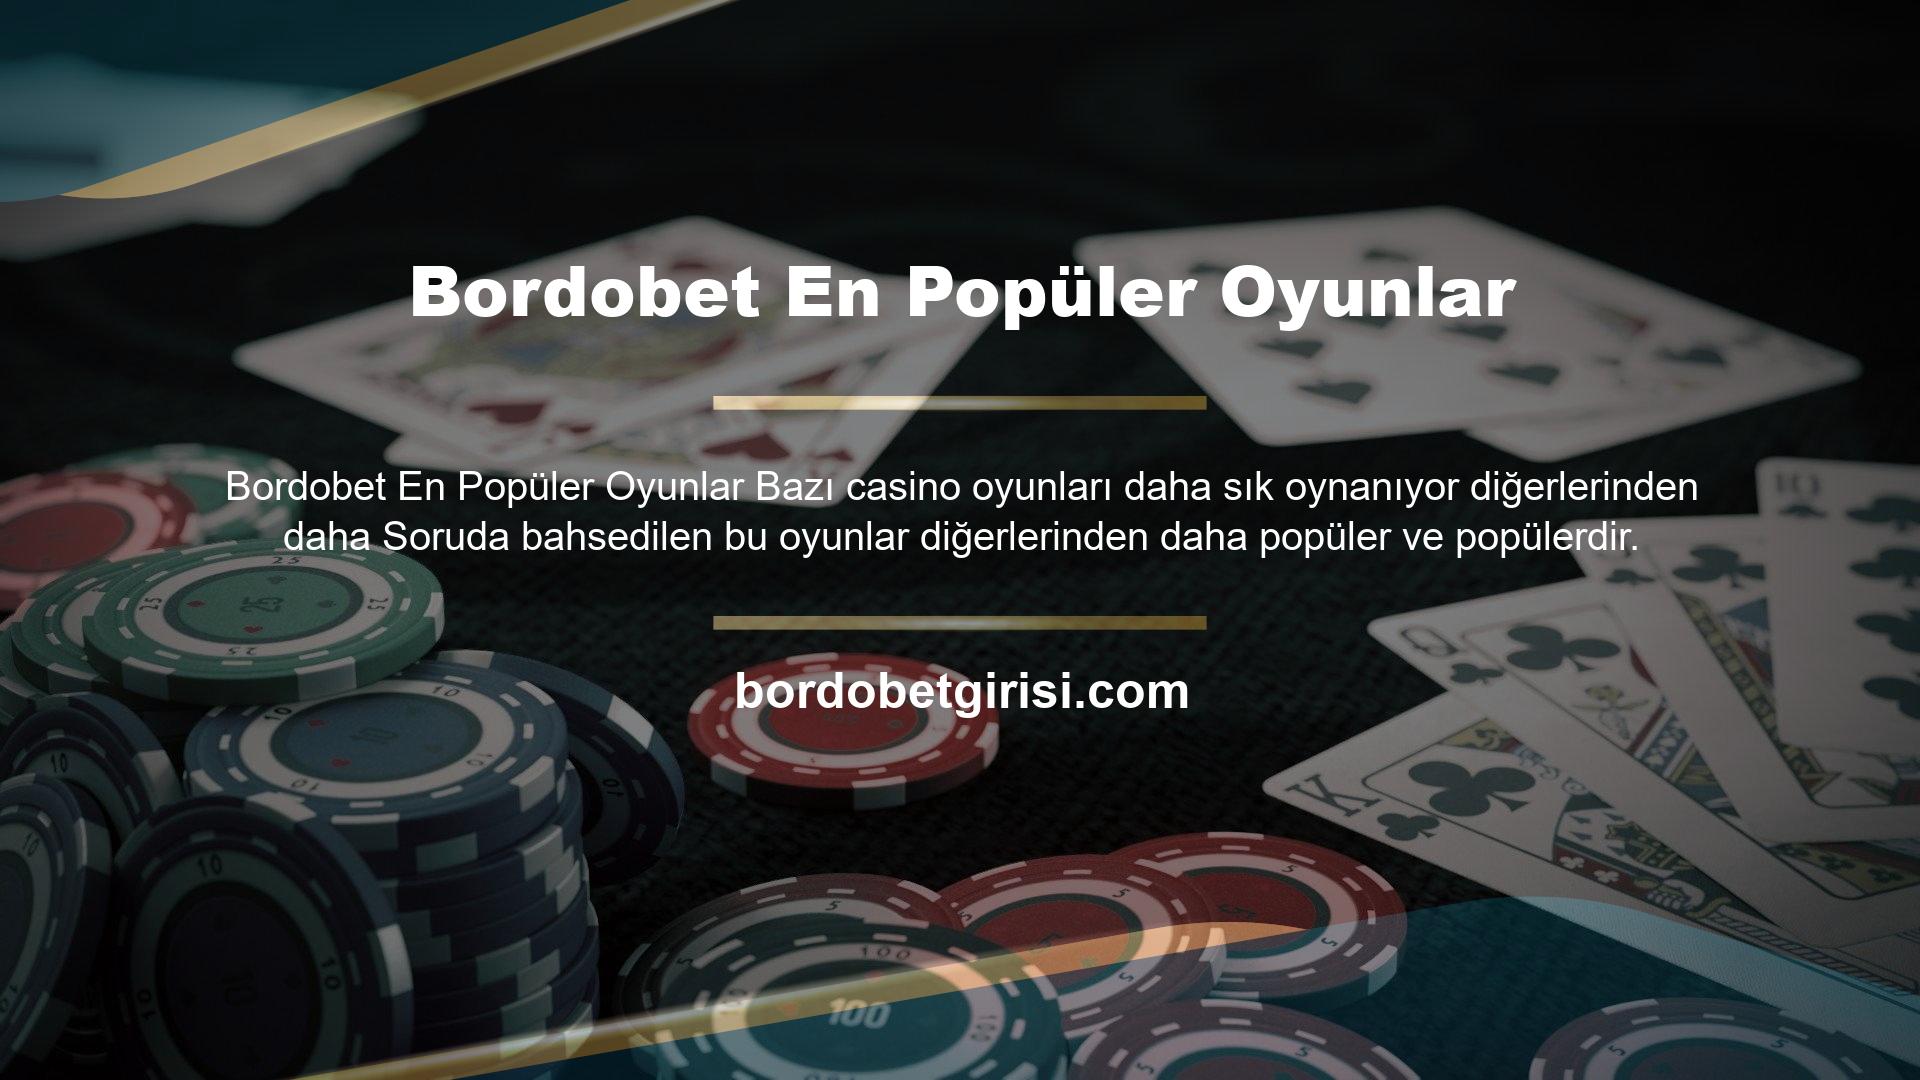 Bu web sitesi bu ünlü casino oyunlarından bazılarını sunar ve bunlardan para kazanmanızı sağlar